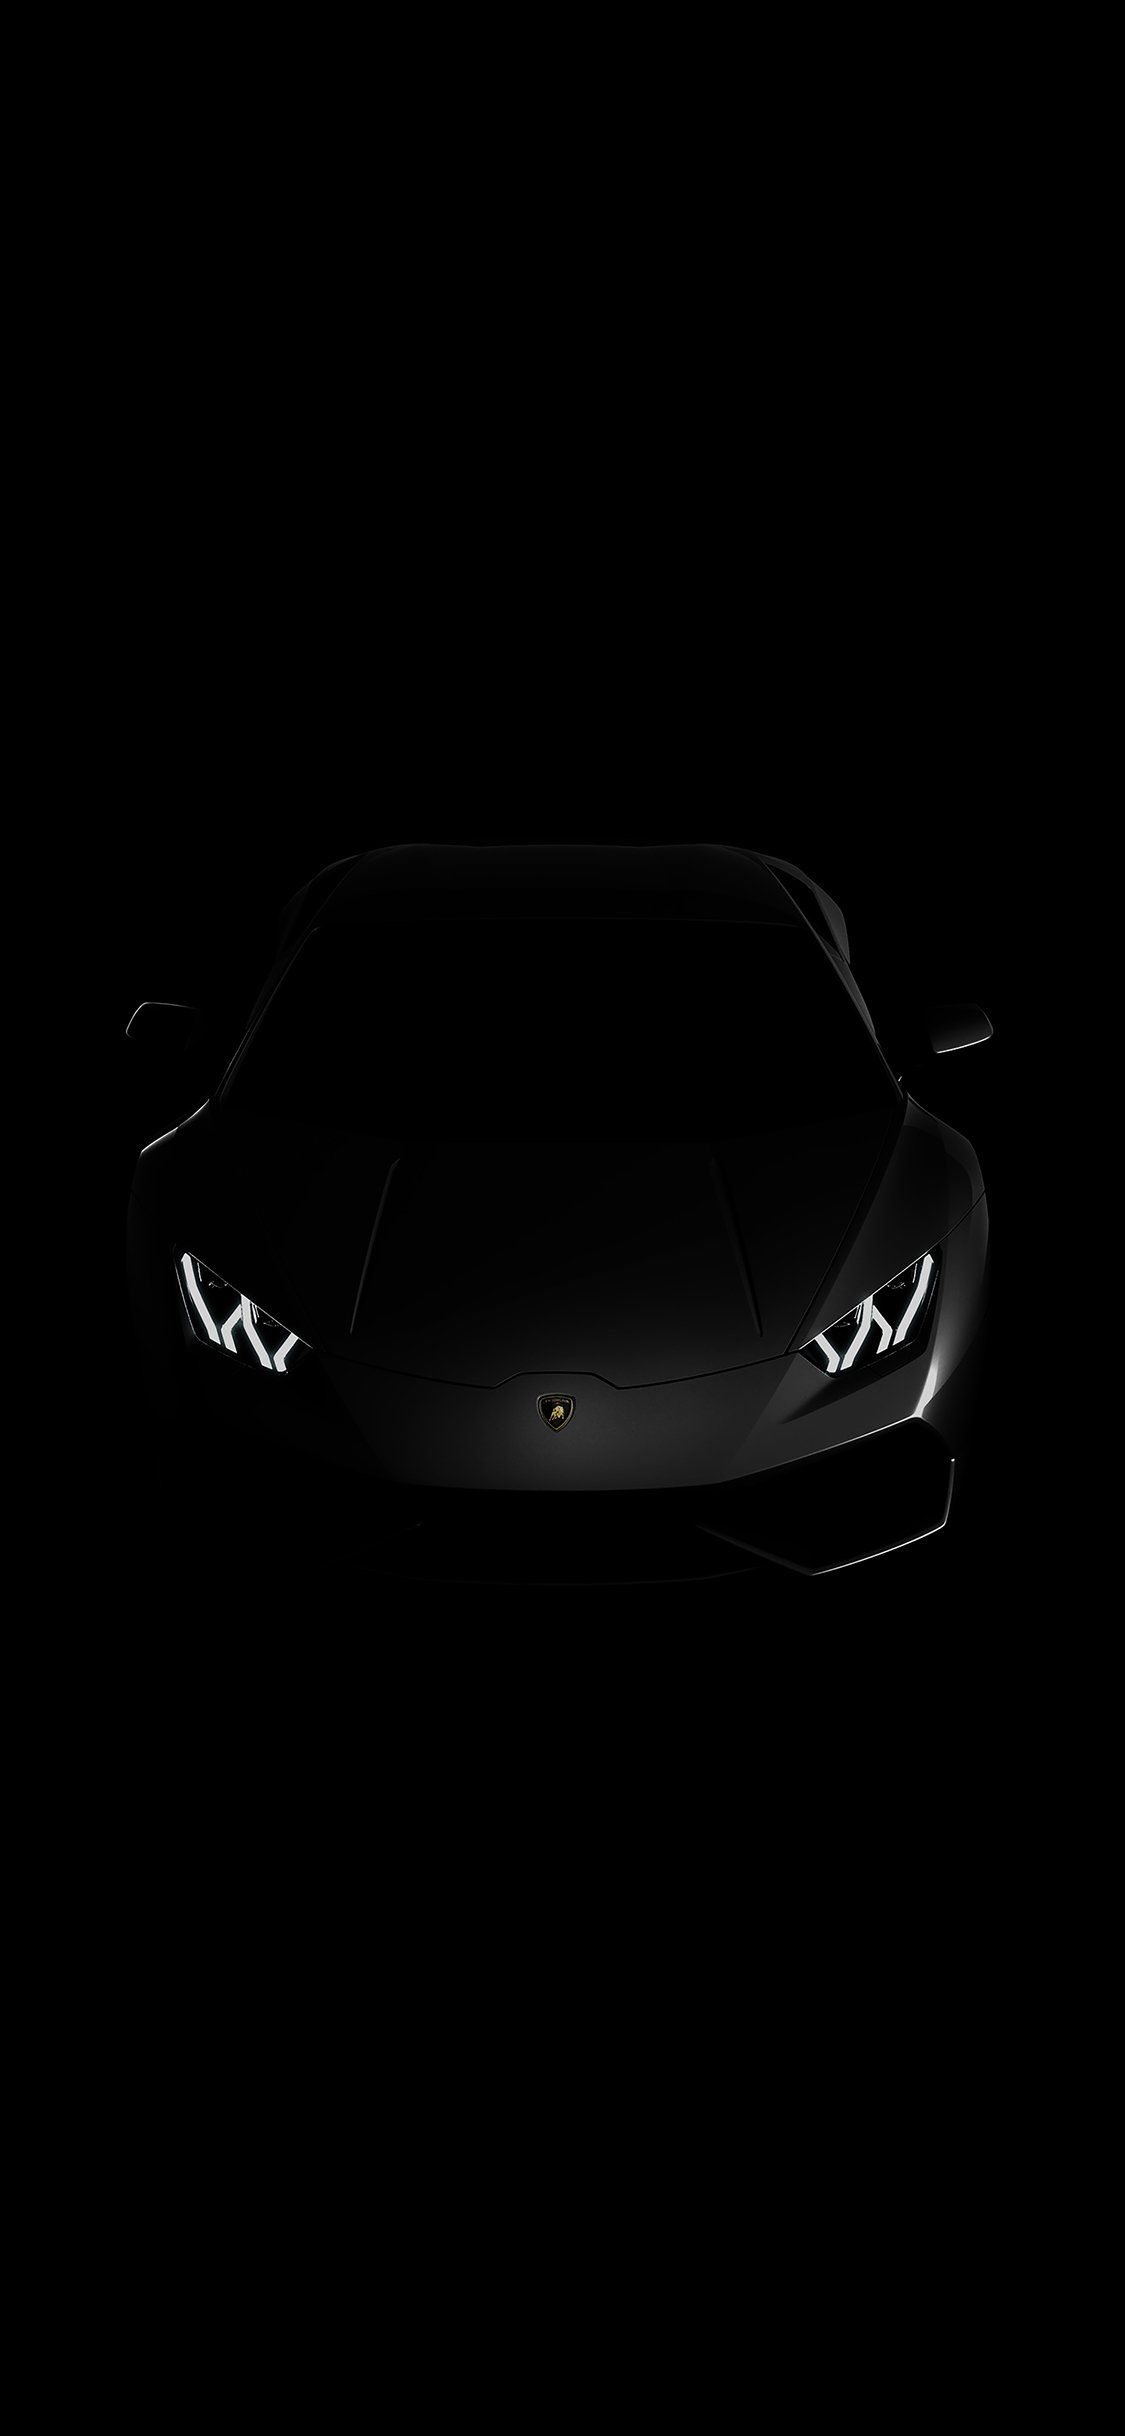 Lamborghini dark iPhone 11 Wallpaper Free Download